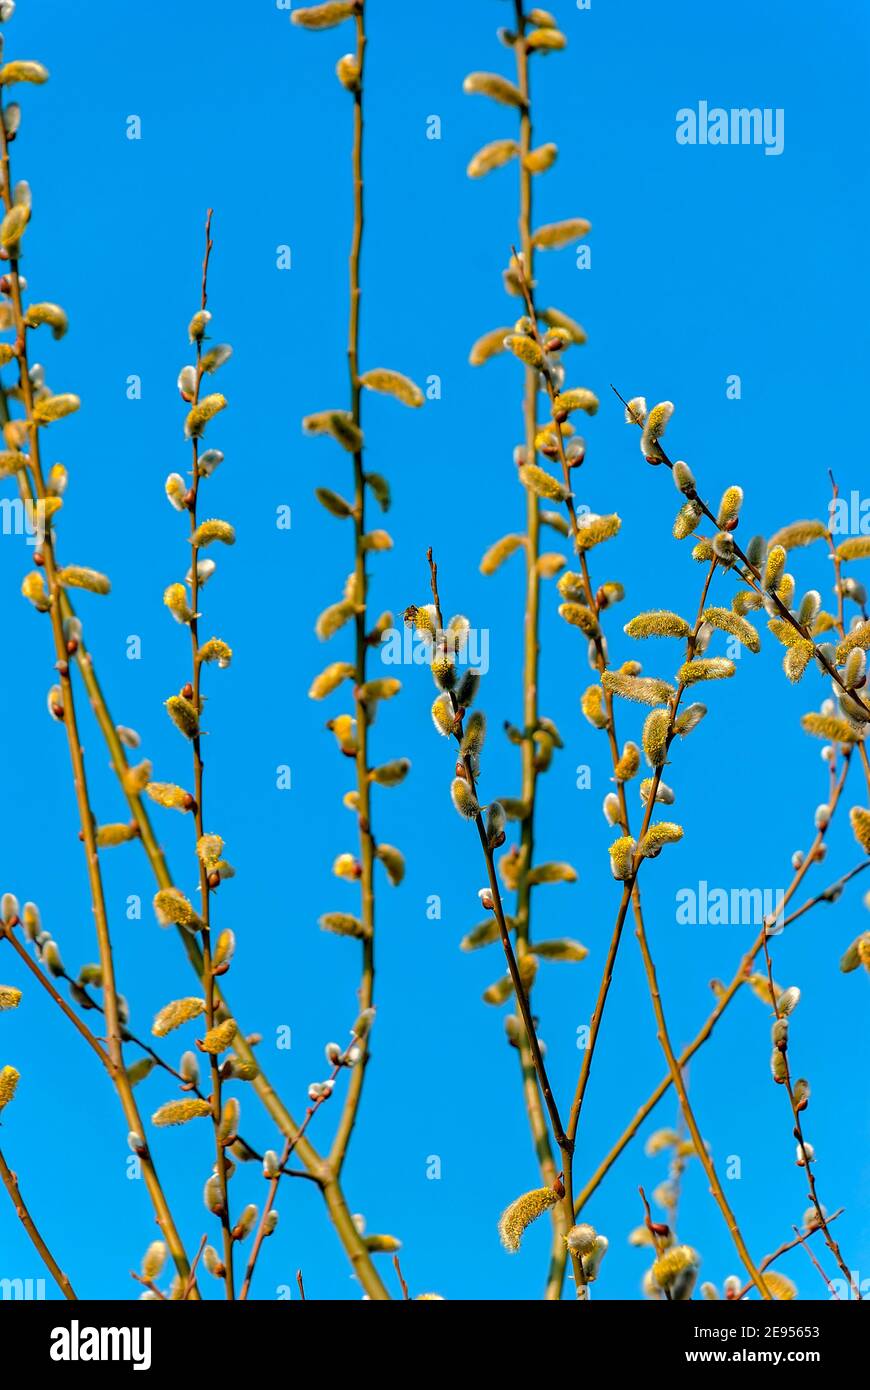 Cartolina pasquale – ramoscelli di un salice in fiore contro il cielo azzurro e limpido. Un'ape è visibile. Pianta di Meliferous. Foto Stock